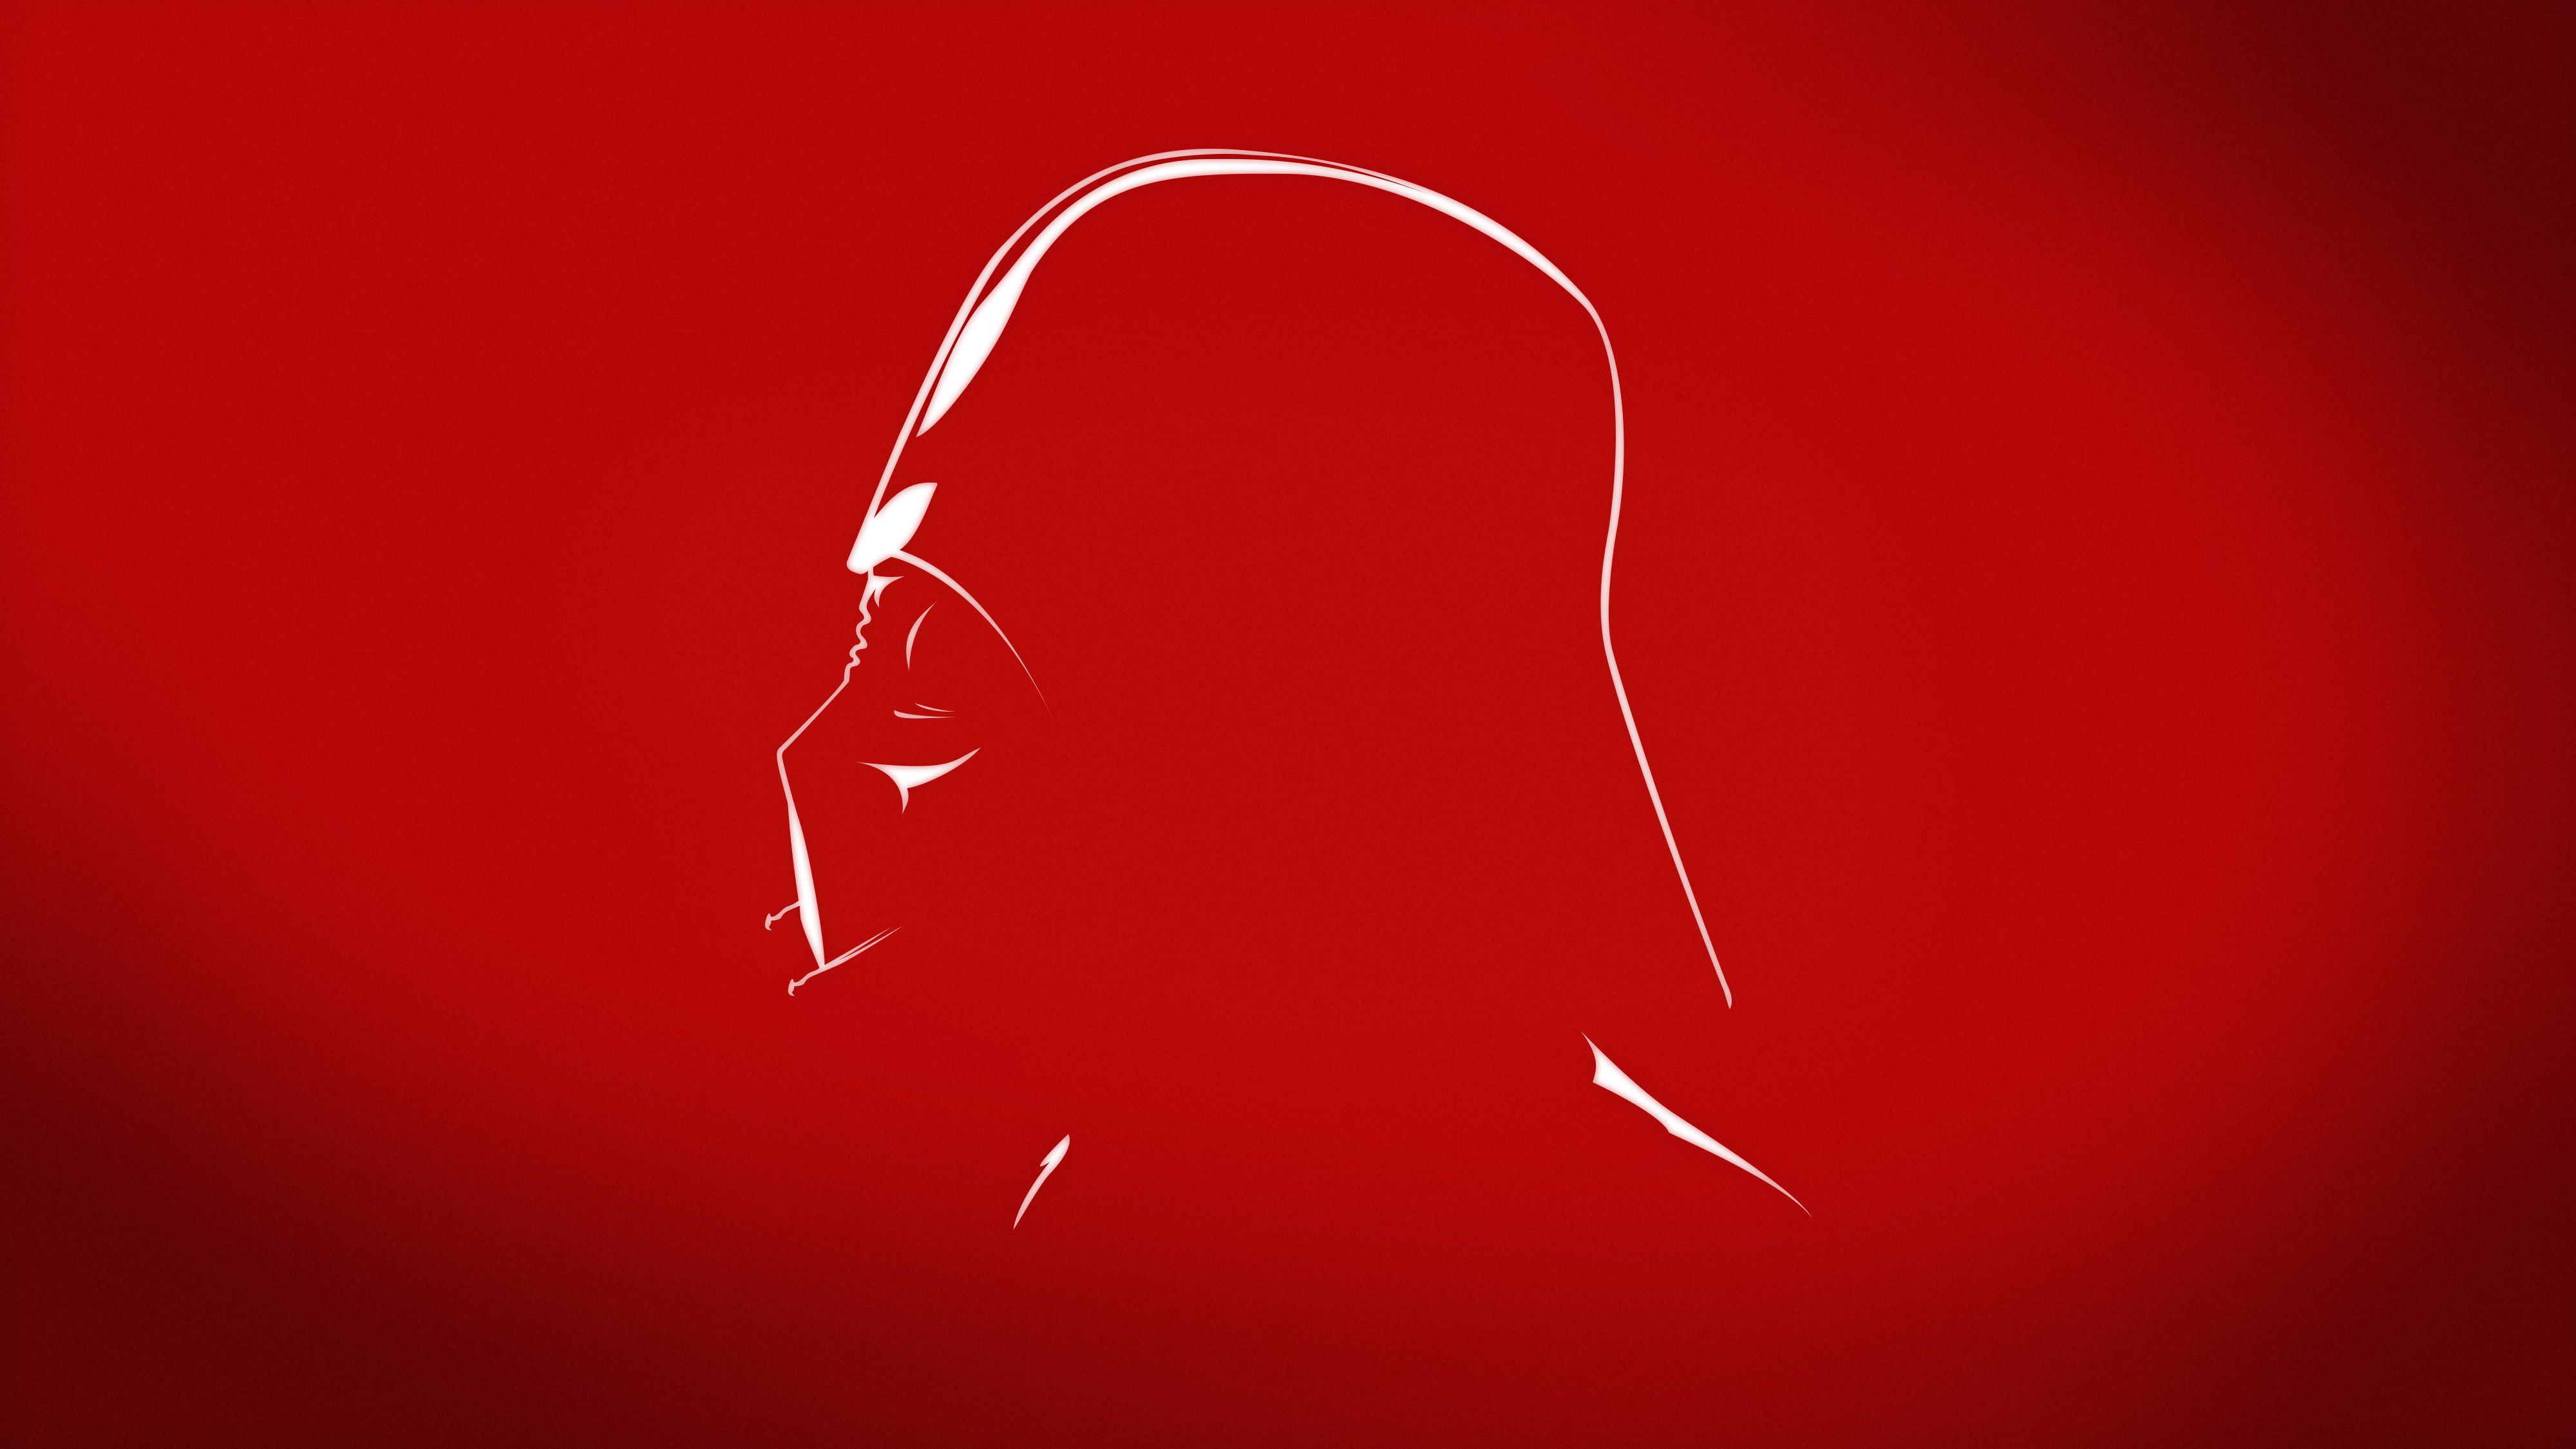 Darth Vader Abstract 5k, HD Movies, 4k Wallpaper, Image